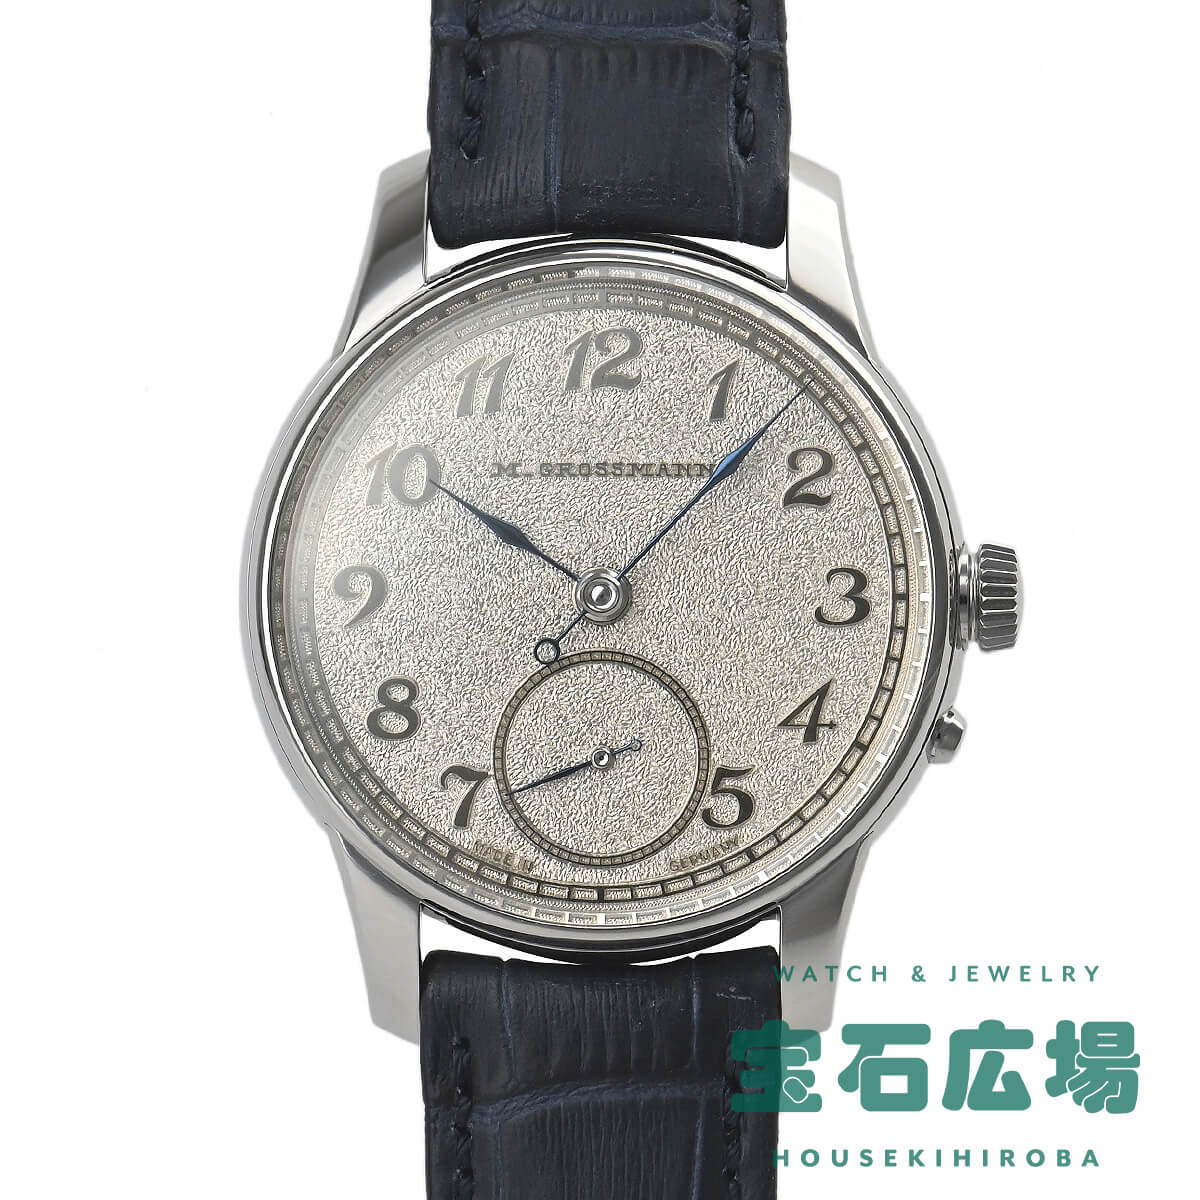 モリッツ・グロスマン MORITZ GROSSMANN ベヌートレンブラージュ MG-003327 中古 未使用品 メンズ 腕時計